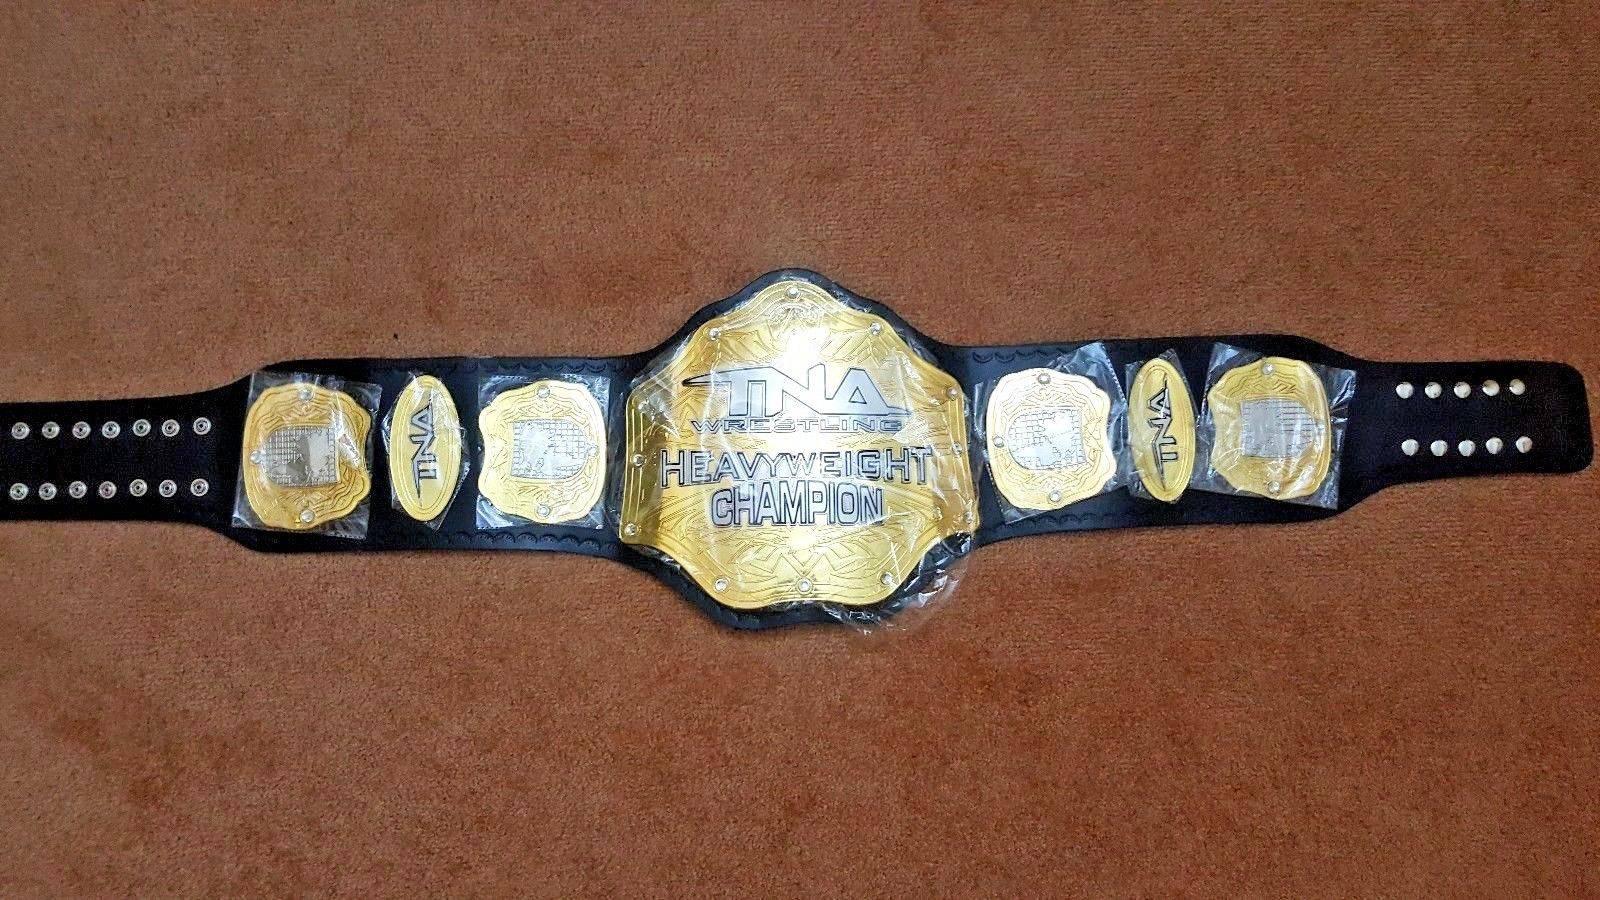 TNA HEAVYWEIGHT Brass Championship Title Belt - Zees Belts